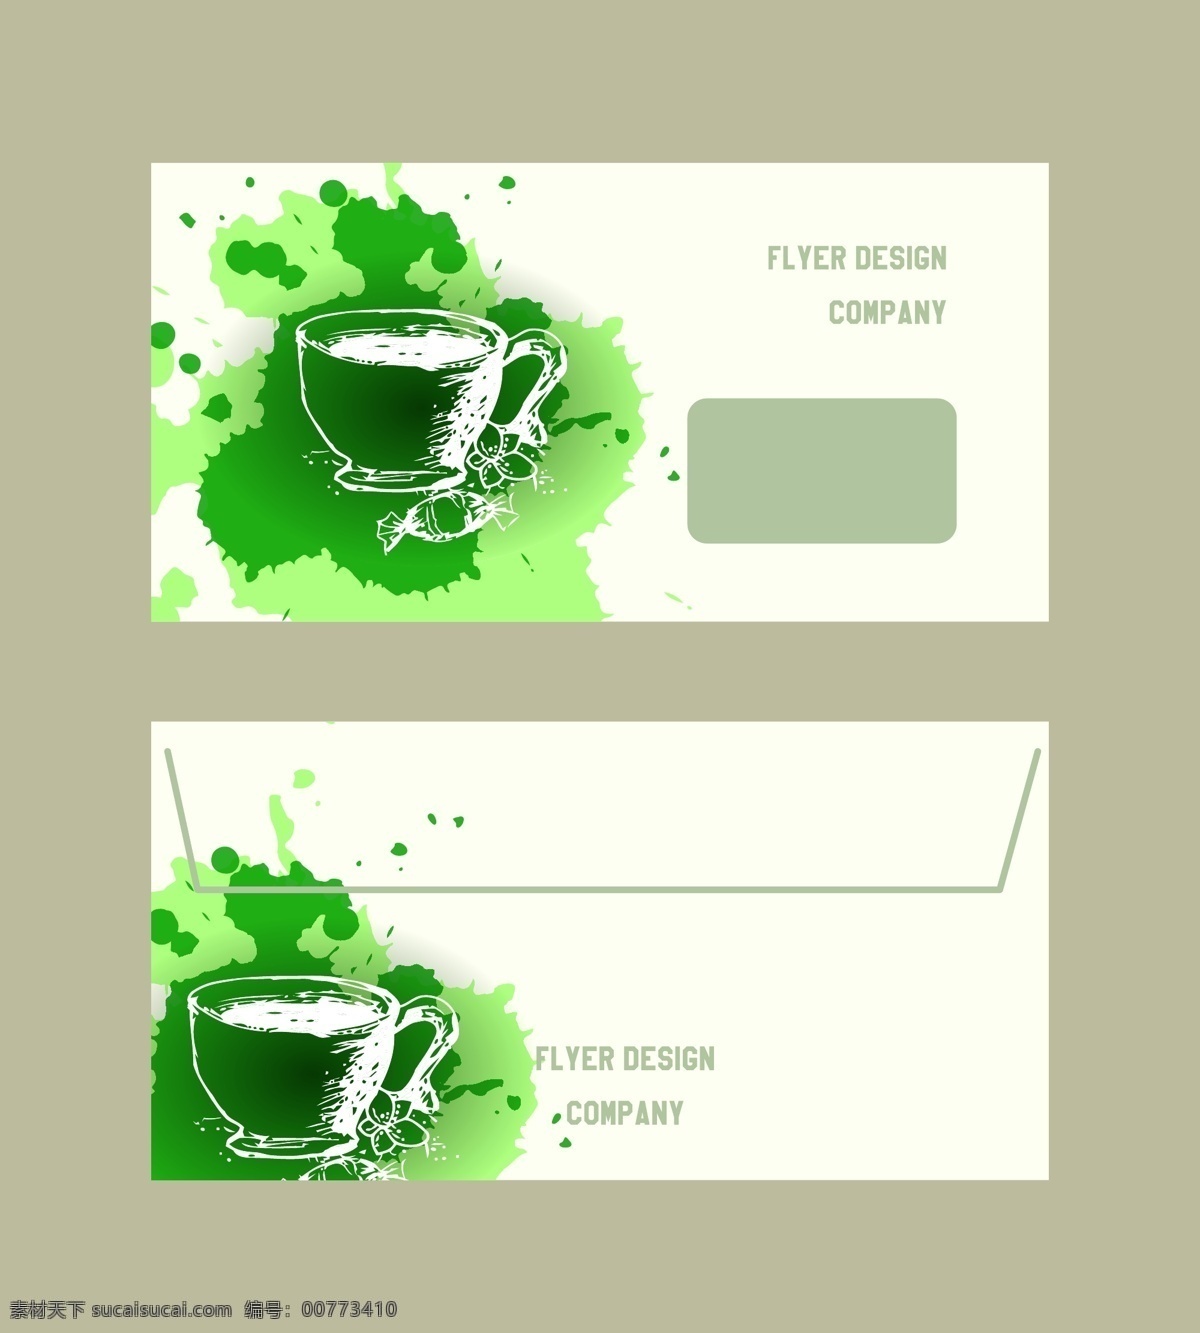 绿茶 概念设计 名片 收藏 健康 页 咖啡店 文献 打印 厨房 绿色 布局 企业 棕色 商业 喝 向量 介绍 杯子 模板 小册 名称 卡 标签 杯 茶 插图 帧 夹 卷筒纸 小册子 覆盖 茶壶 水彩 蛋糕 草图 纸 公司 机 组